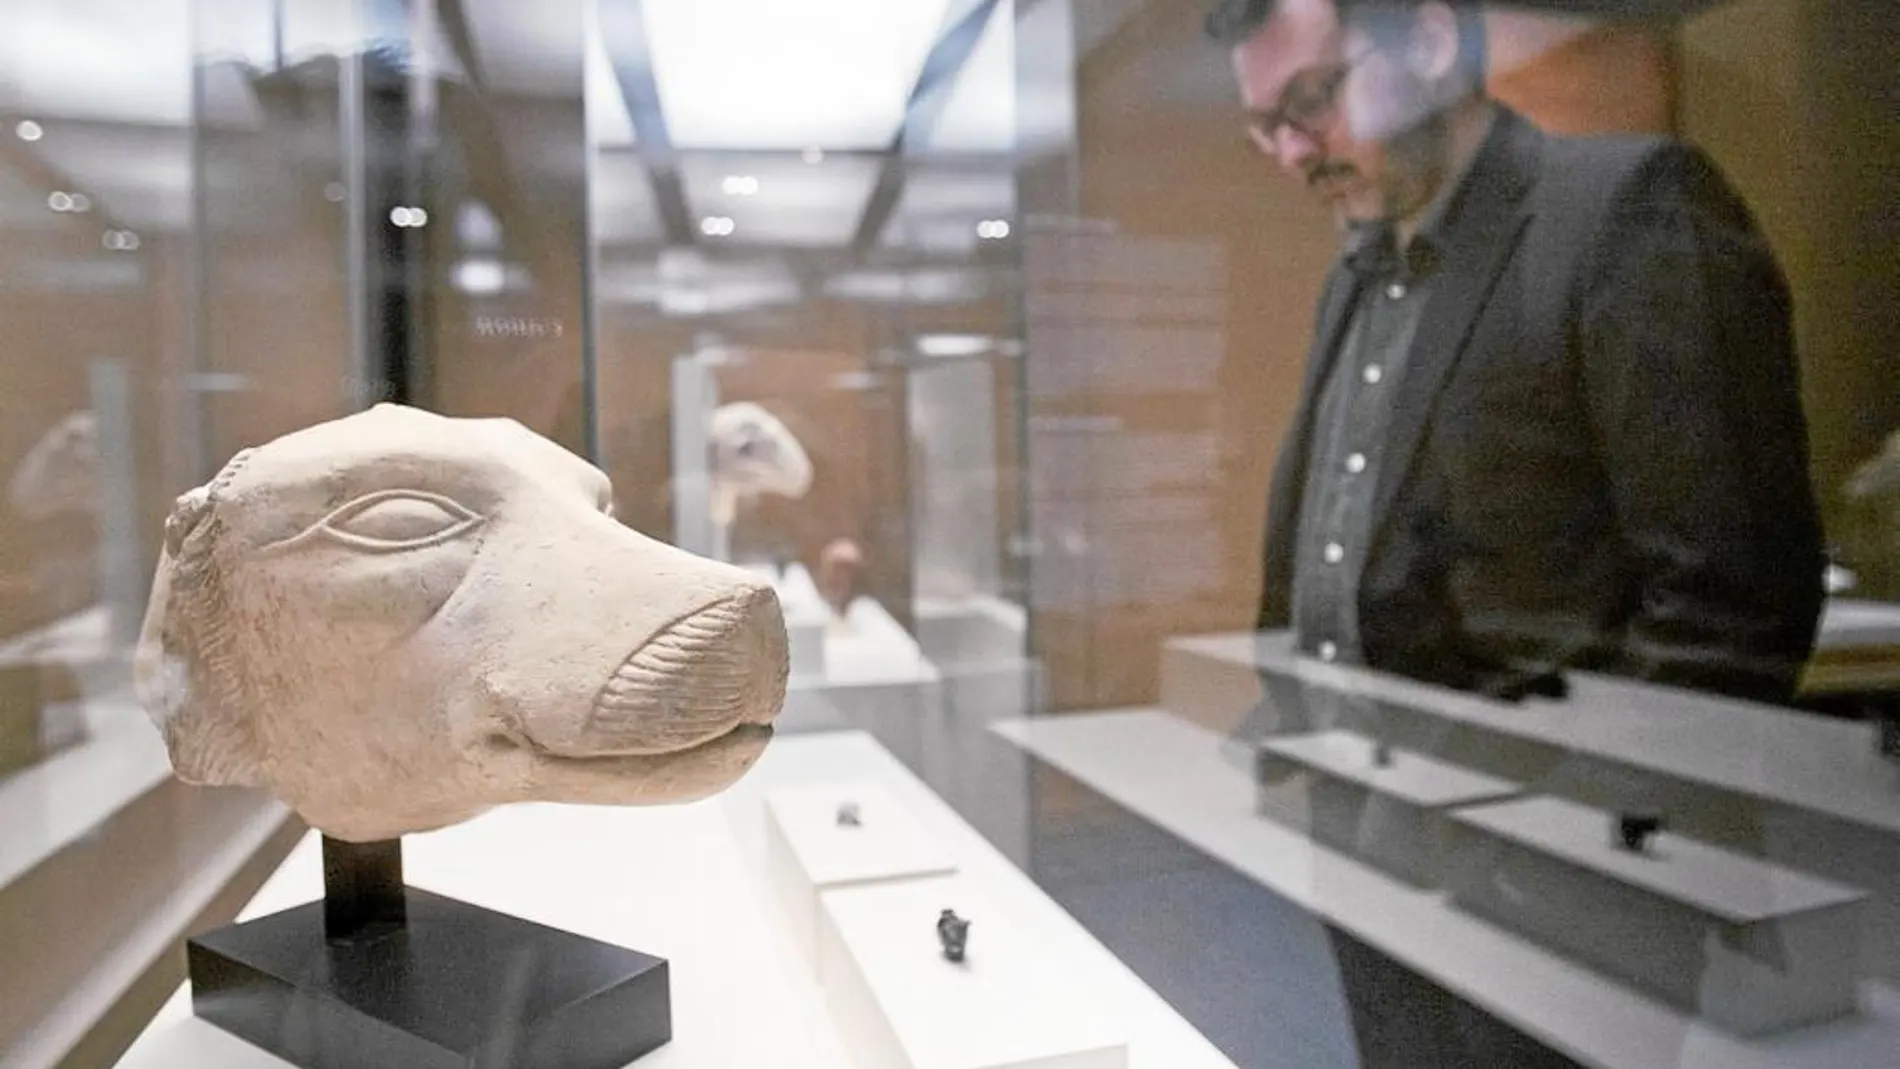 La exposición reúne un total de 400 piezas procedentes del Louvre, algunas tan insólitas como el grupo de babuinos del templo de Luxor